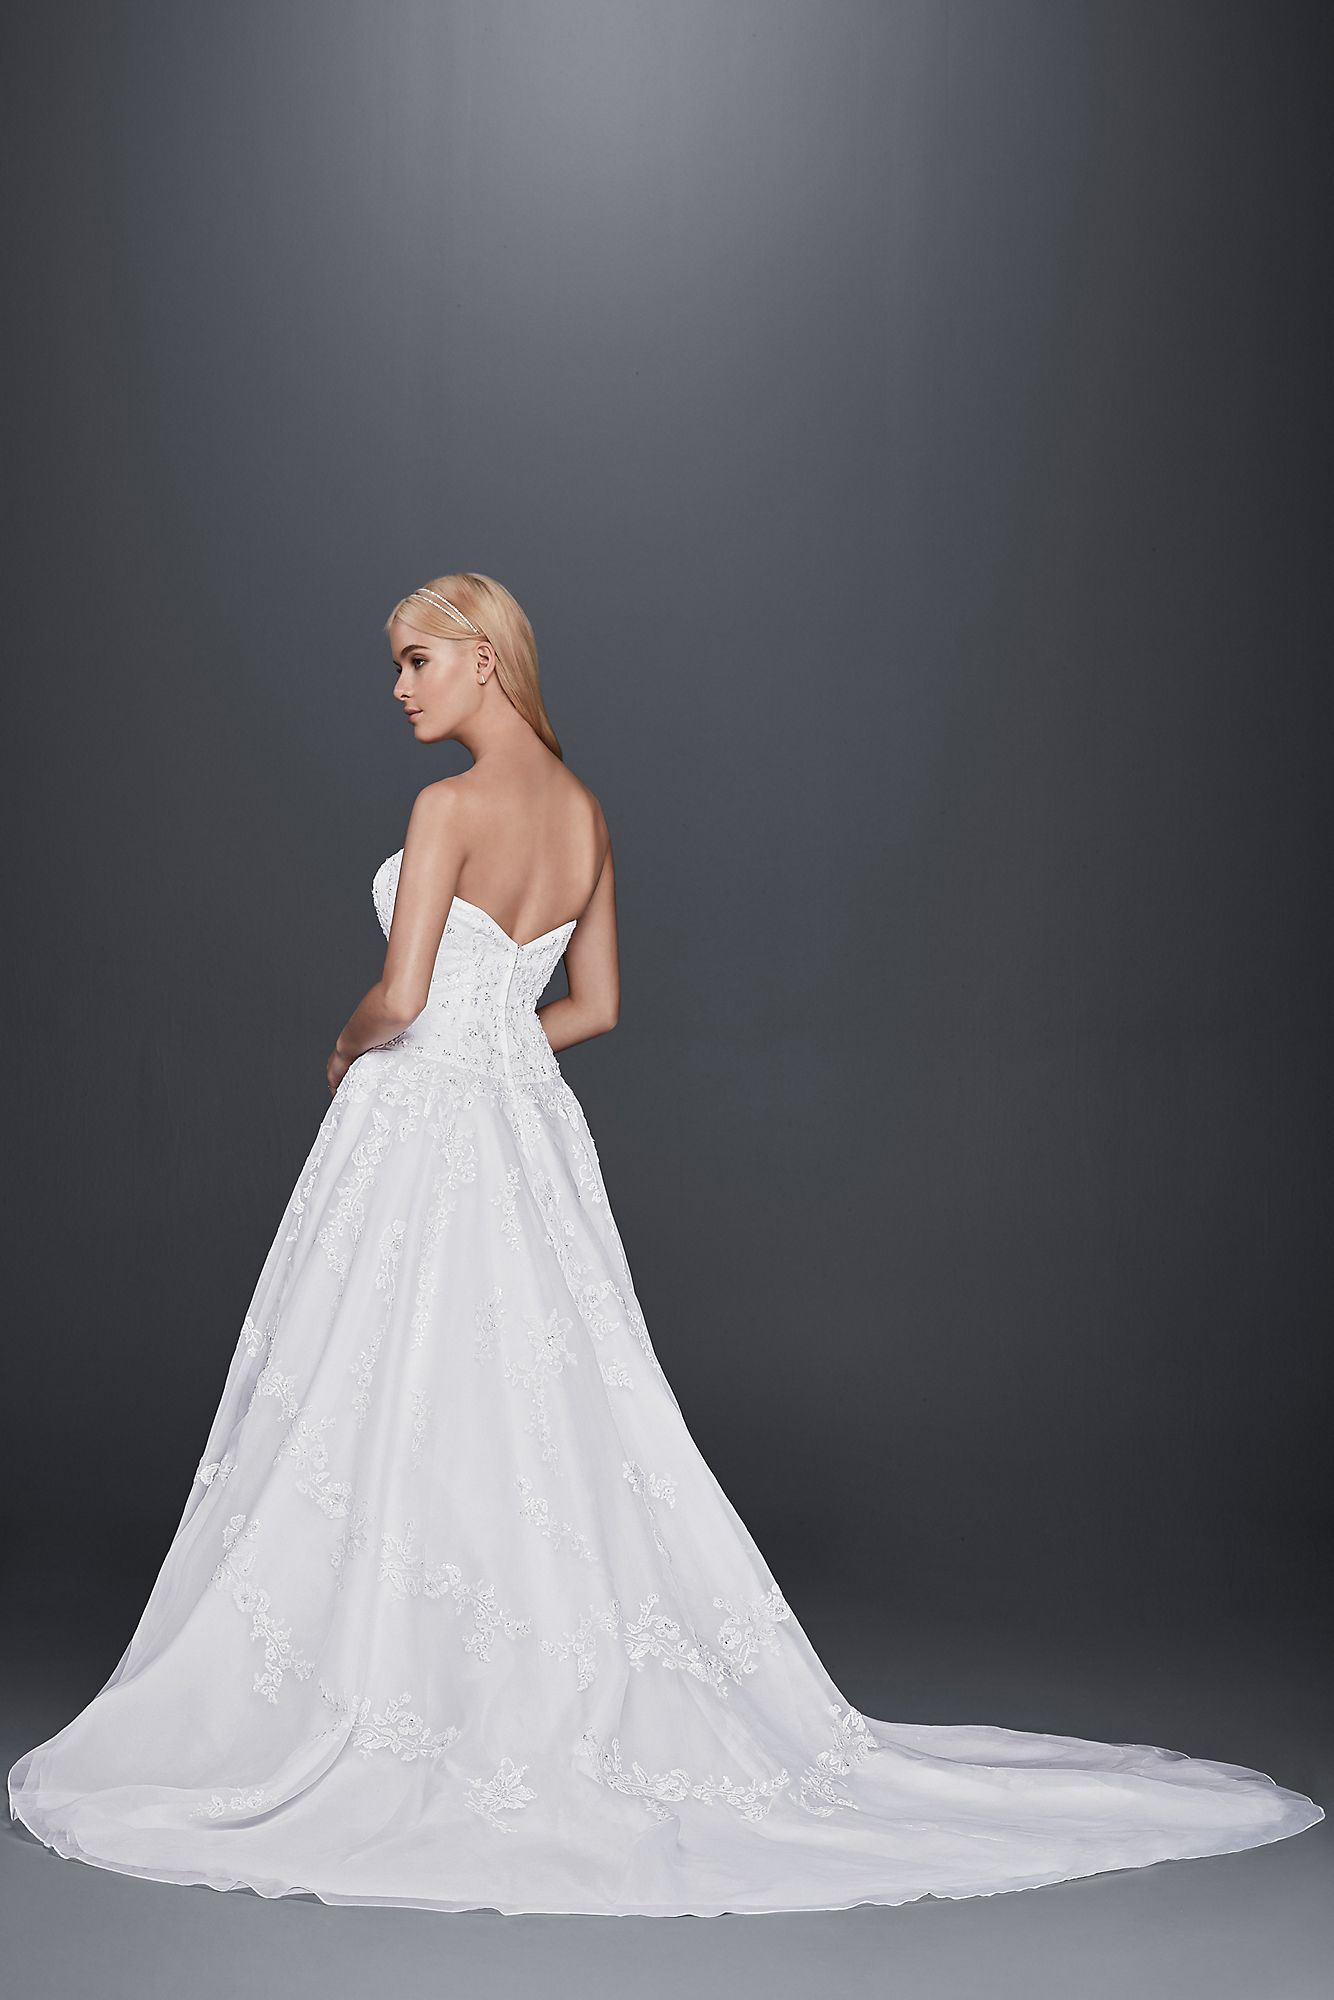 Strapless Lace Drop Waist Ball Gown Wedding Dress   Collection OP1299